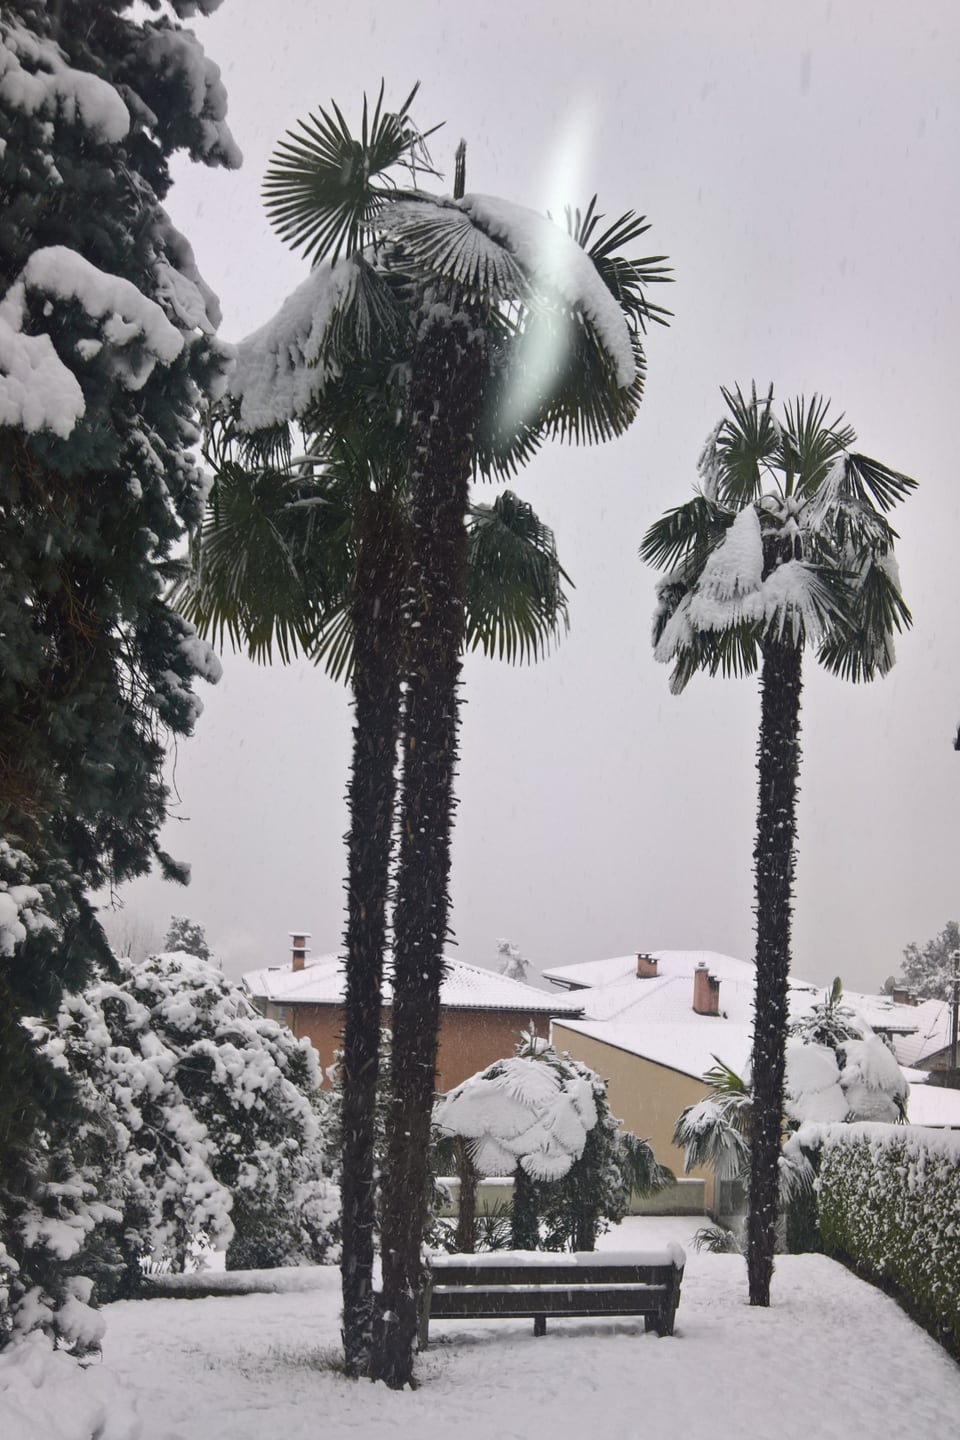 Verschneite Palmen in einem Park in Locarno.